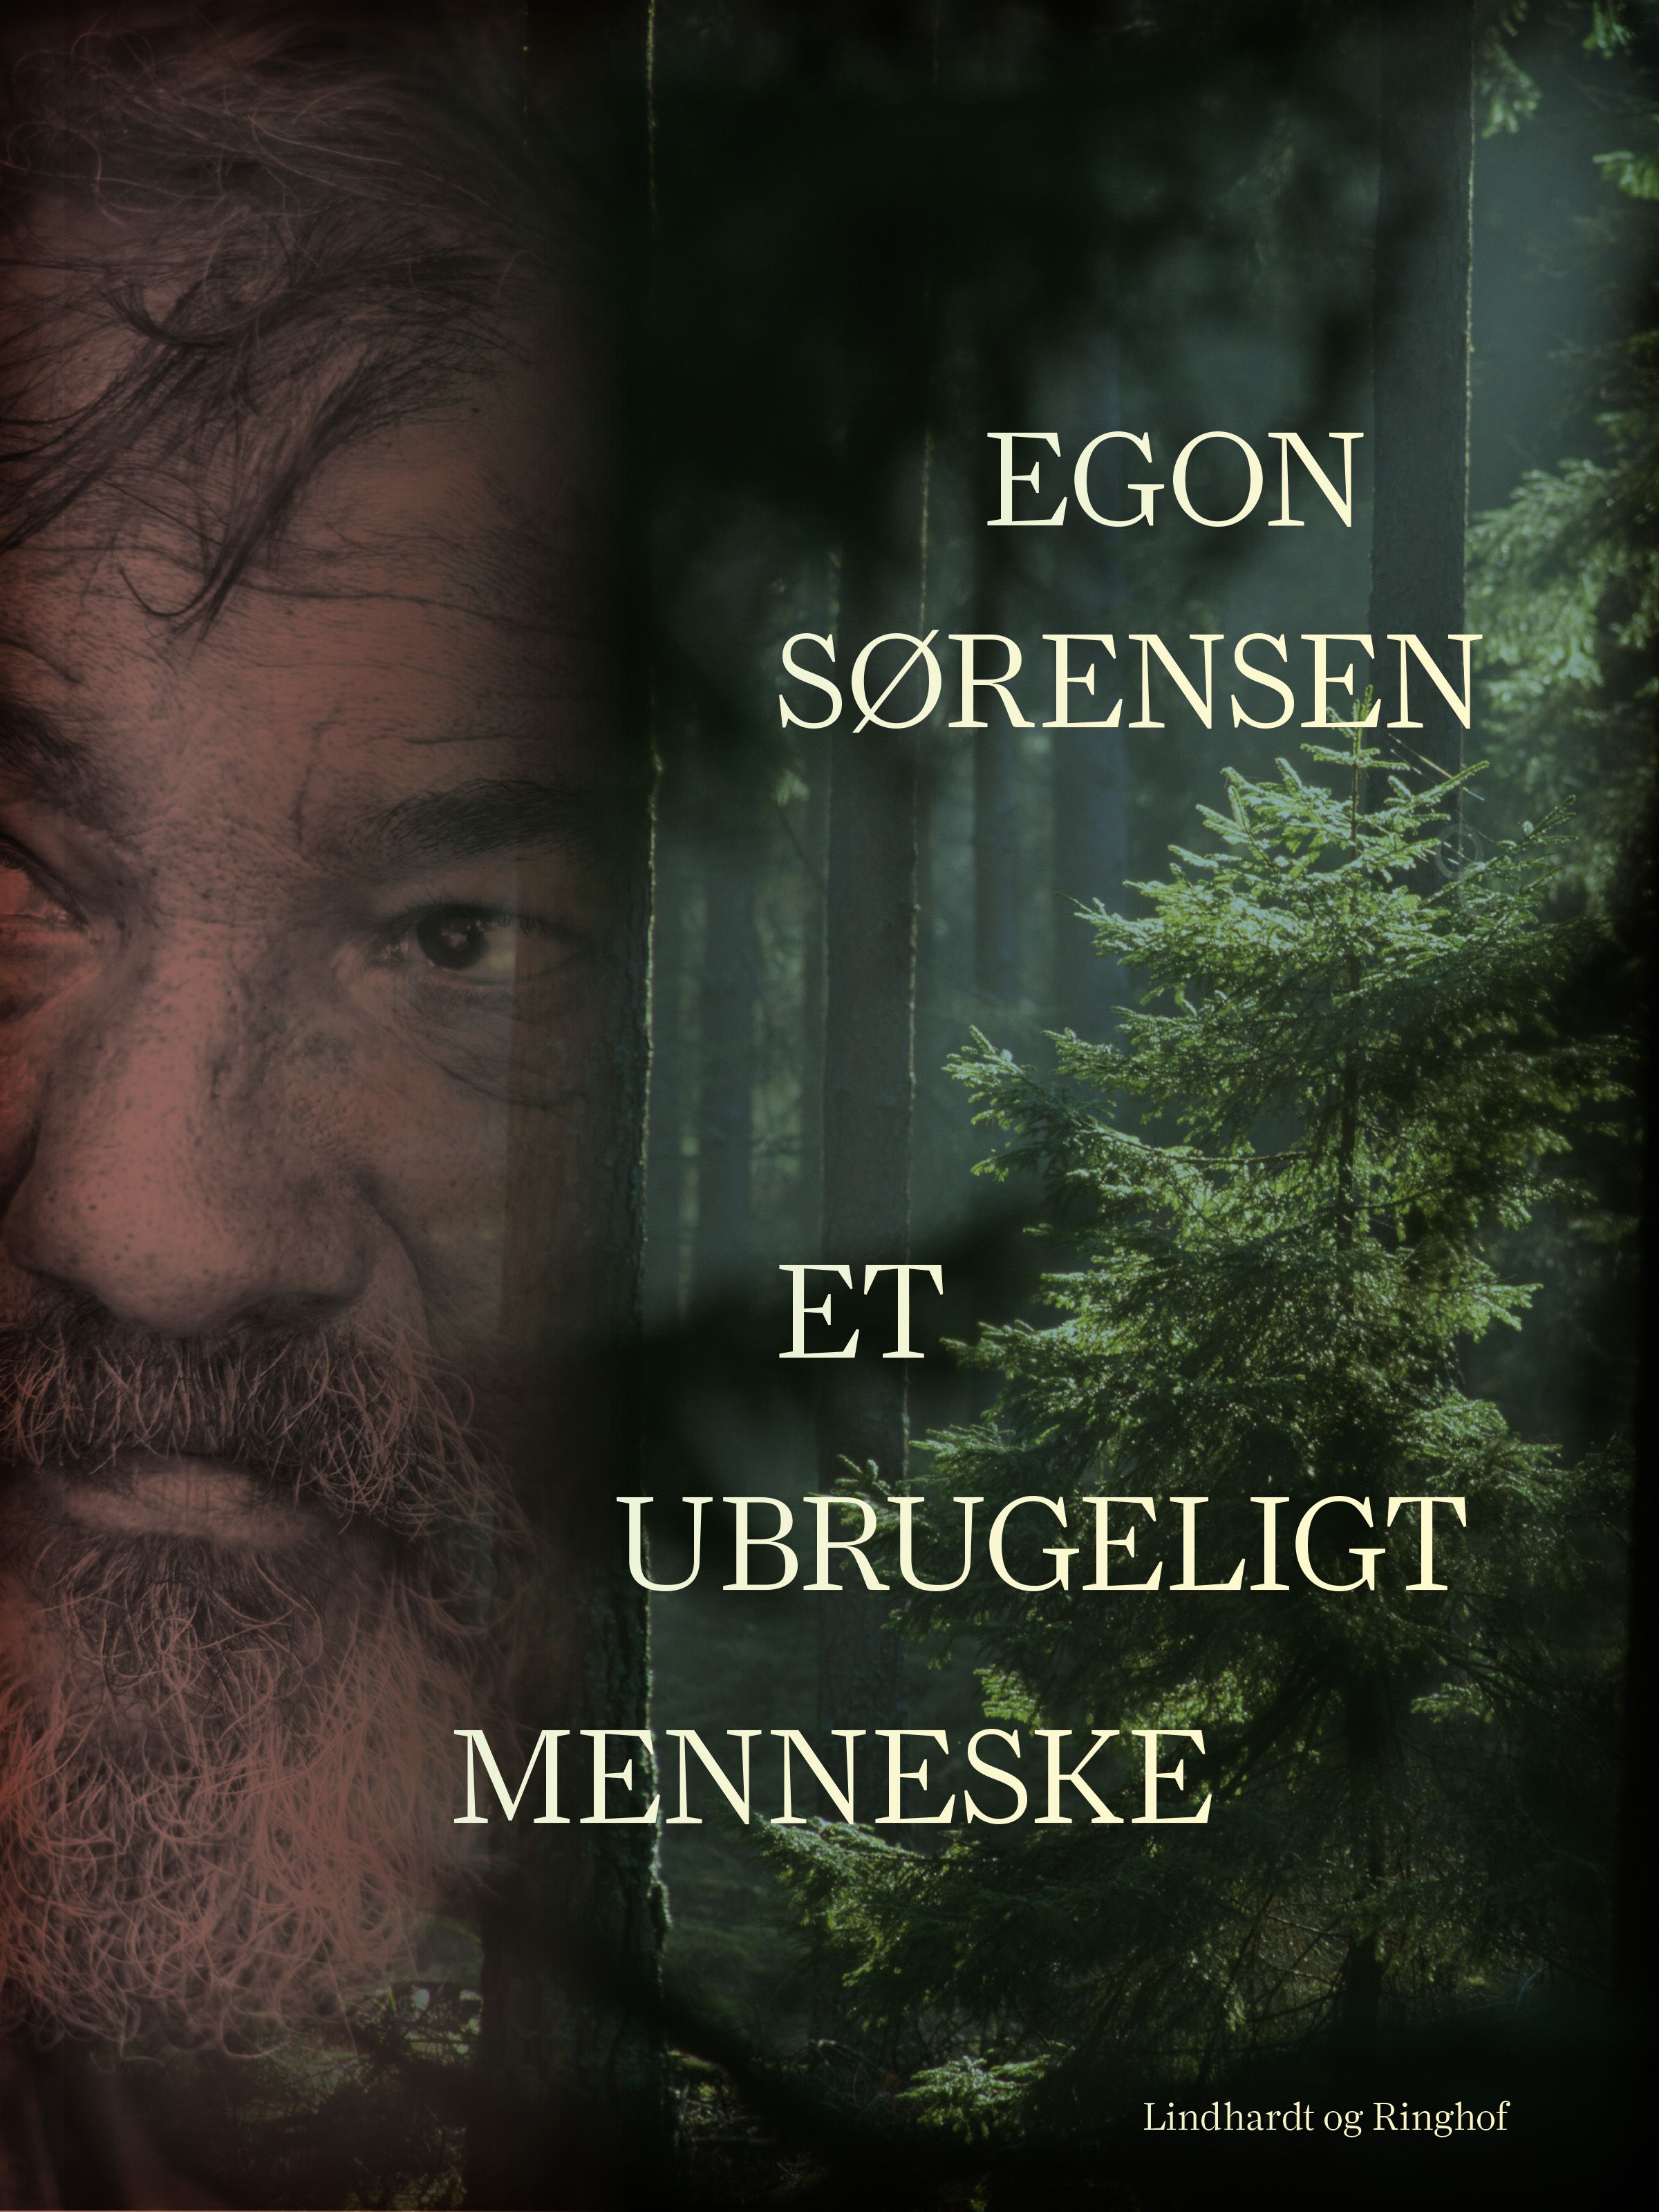 Et ubrugeligt menneske, e-bog af Egon Sørensen